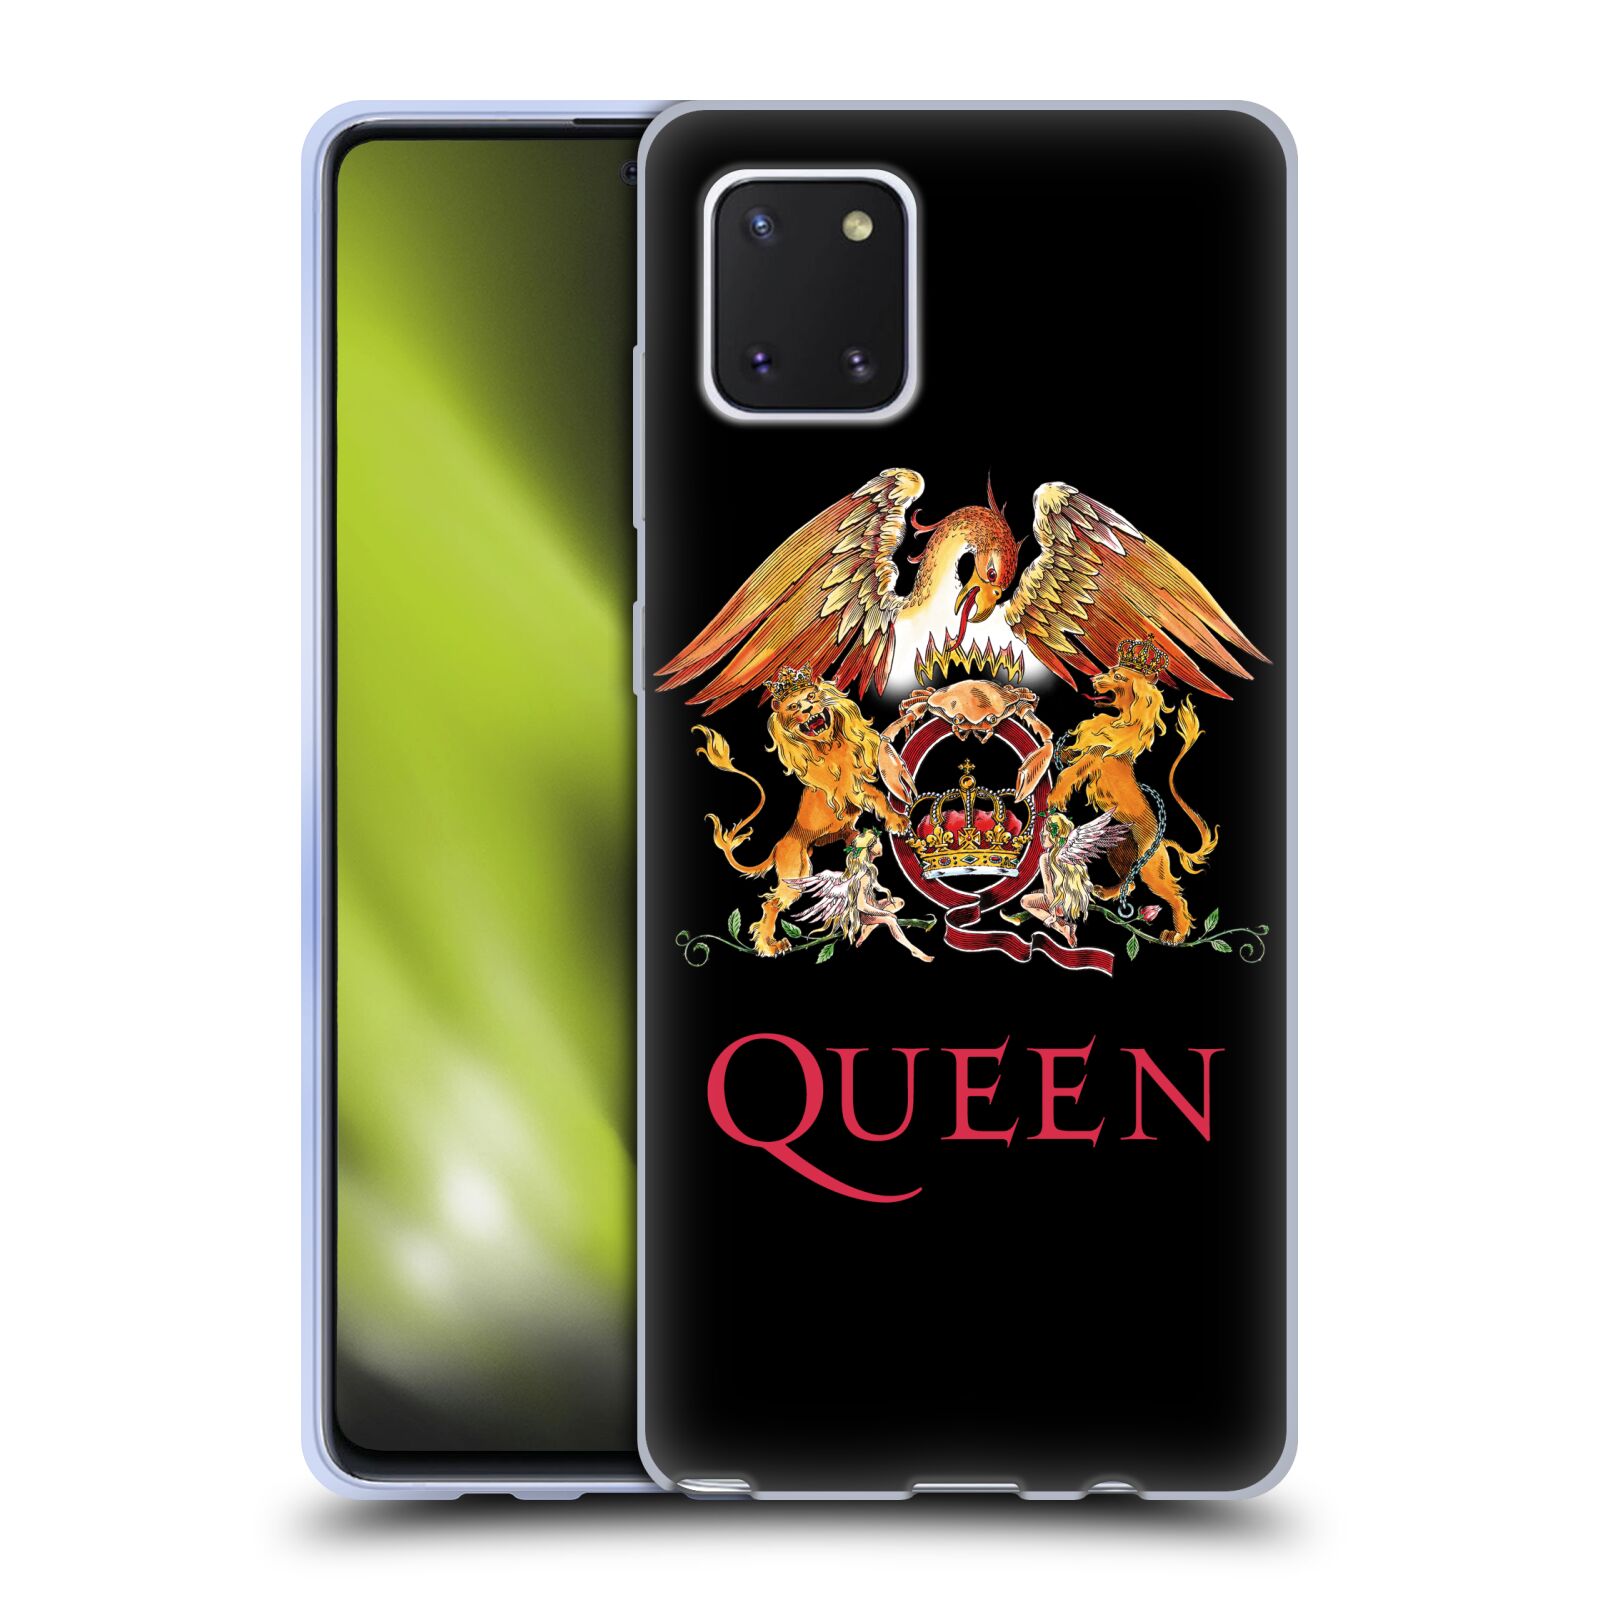 Silikonové pouzdro na mobil Samsung Galaxy Note 10 Lite - Head Case - Queen - Logo